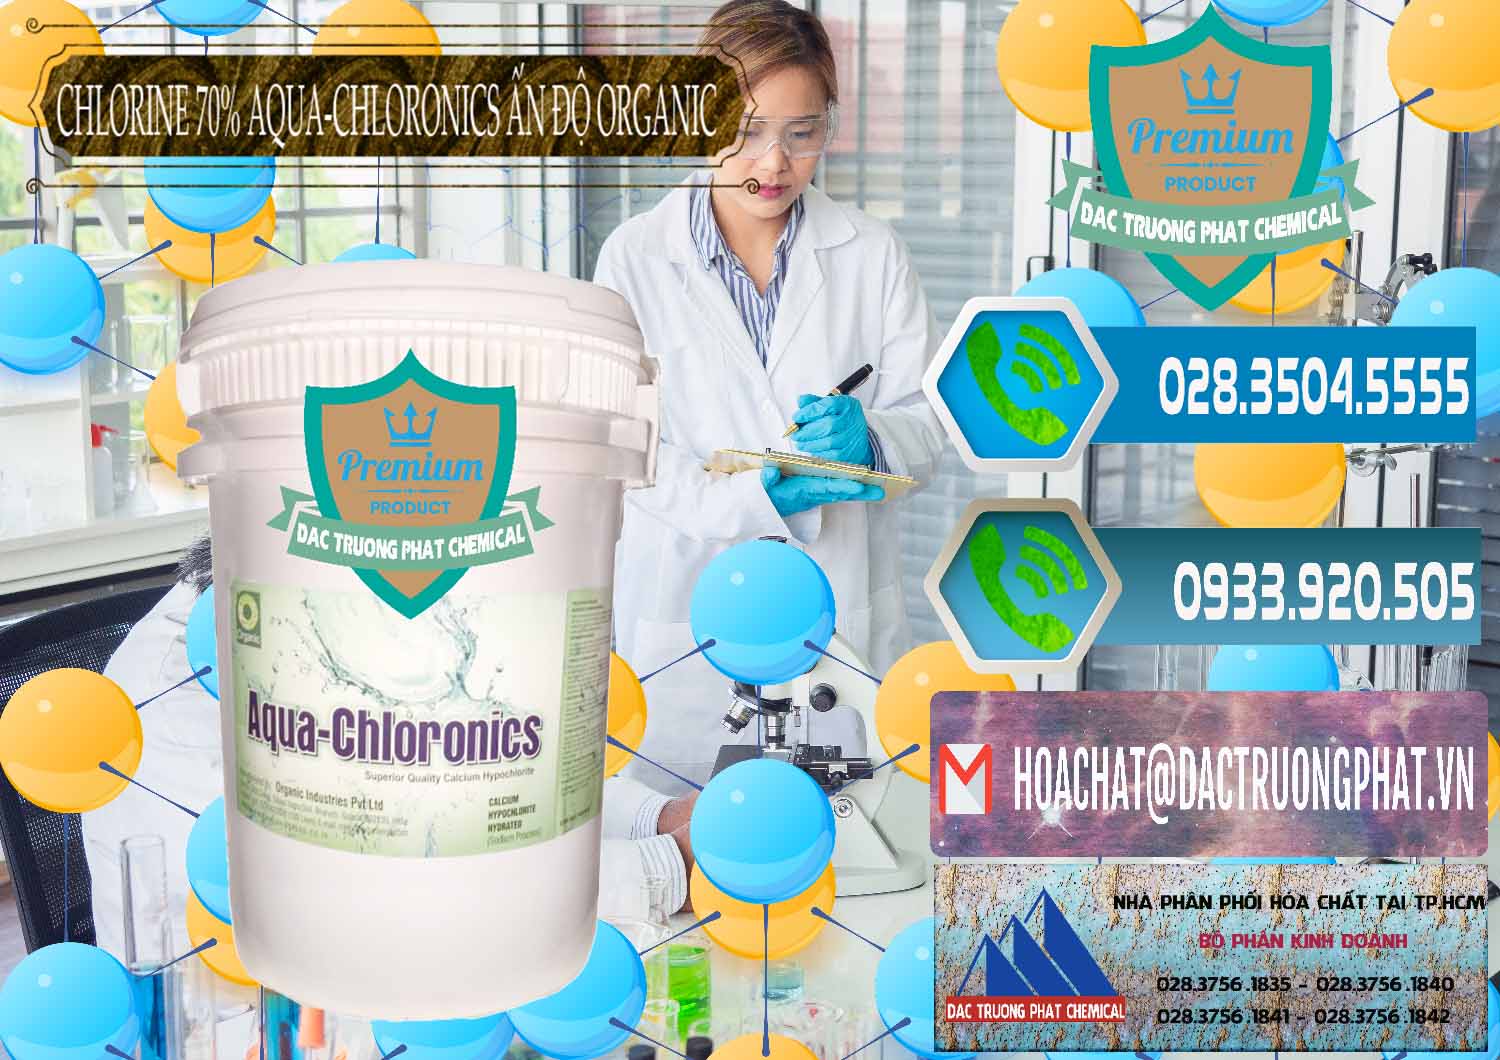 Cty bán _ cung ứng Chlorine – Clorin 70% Aqua-Chloronics Ấn Độ Organic India - 0211 - Nhà cung ứng _ phân phối hóa chất tại TP.HCM - congtyhoachat.net